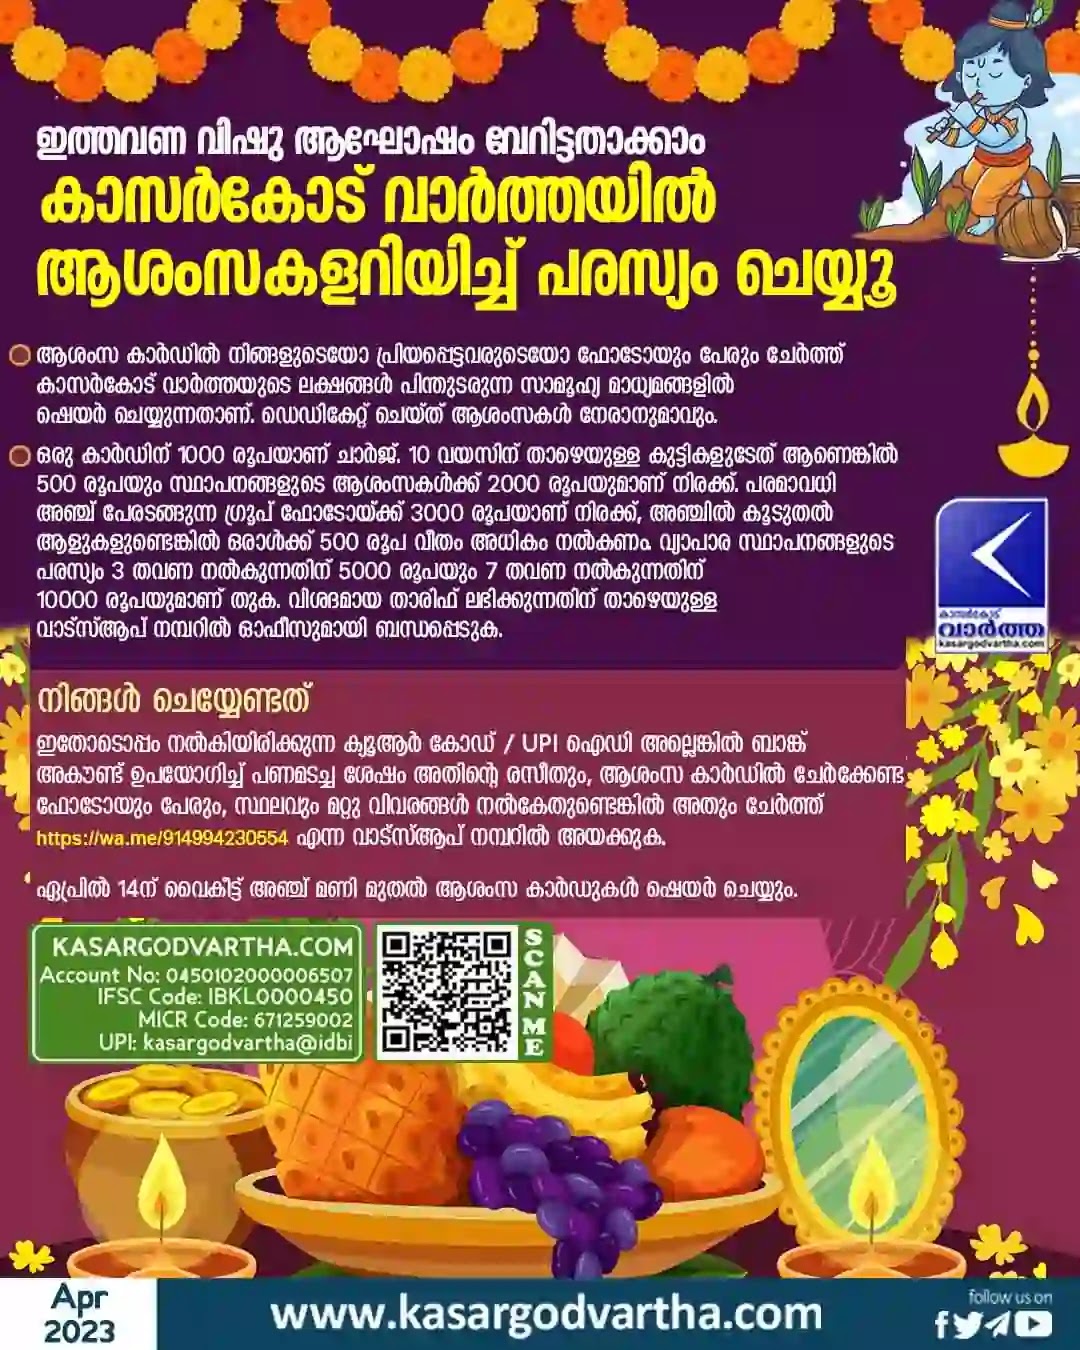 Vishu, Vishu 2023, Vishu Greetings, Vishu Celebration, Kasargod Vartha, Kerala, Kasaragod, Celebrate Vishu with Kasargod Vartha.